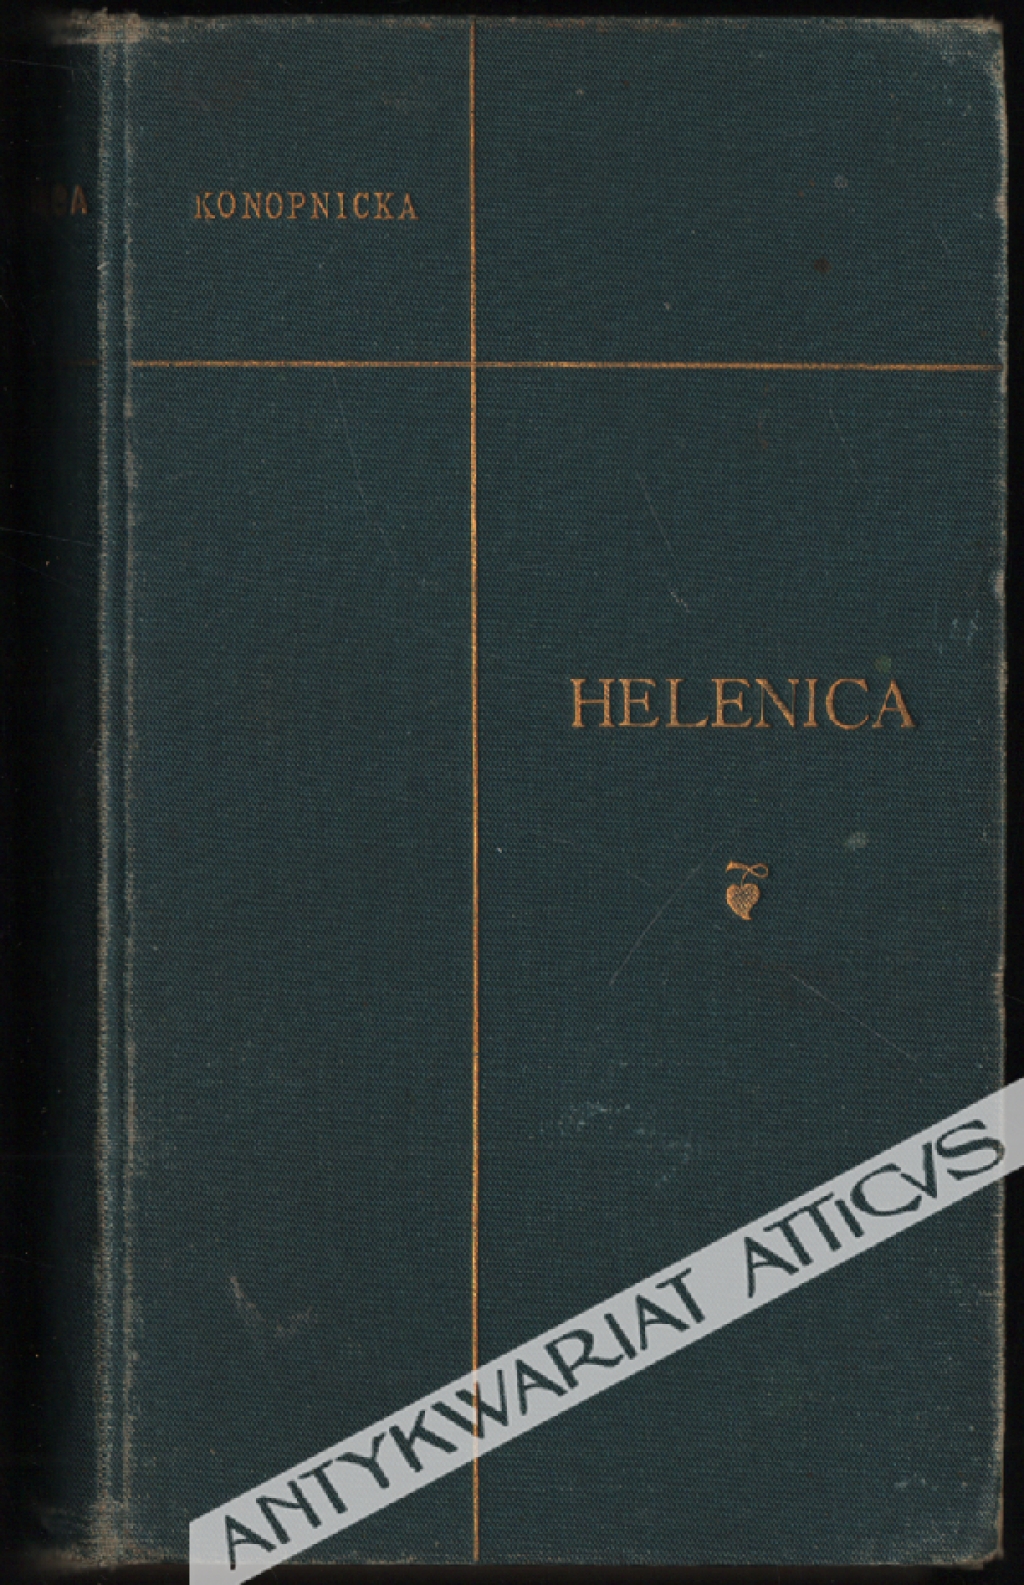 Poezje w nowym układzie, t. II: Helenica